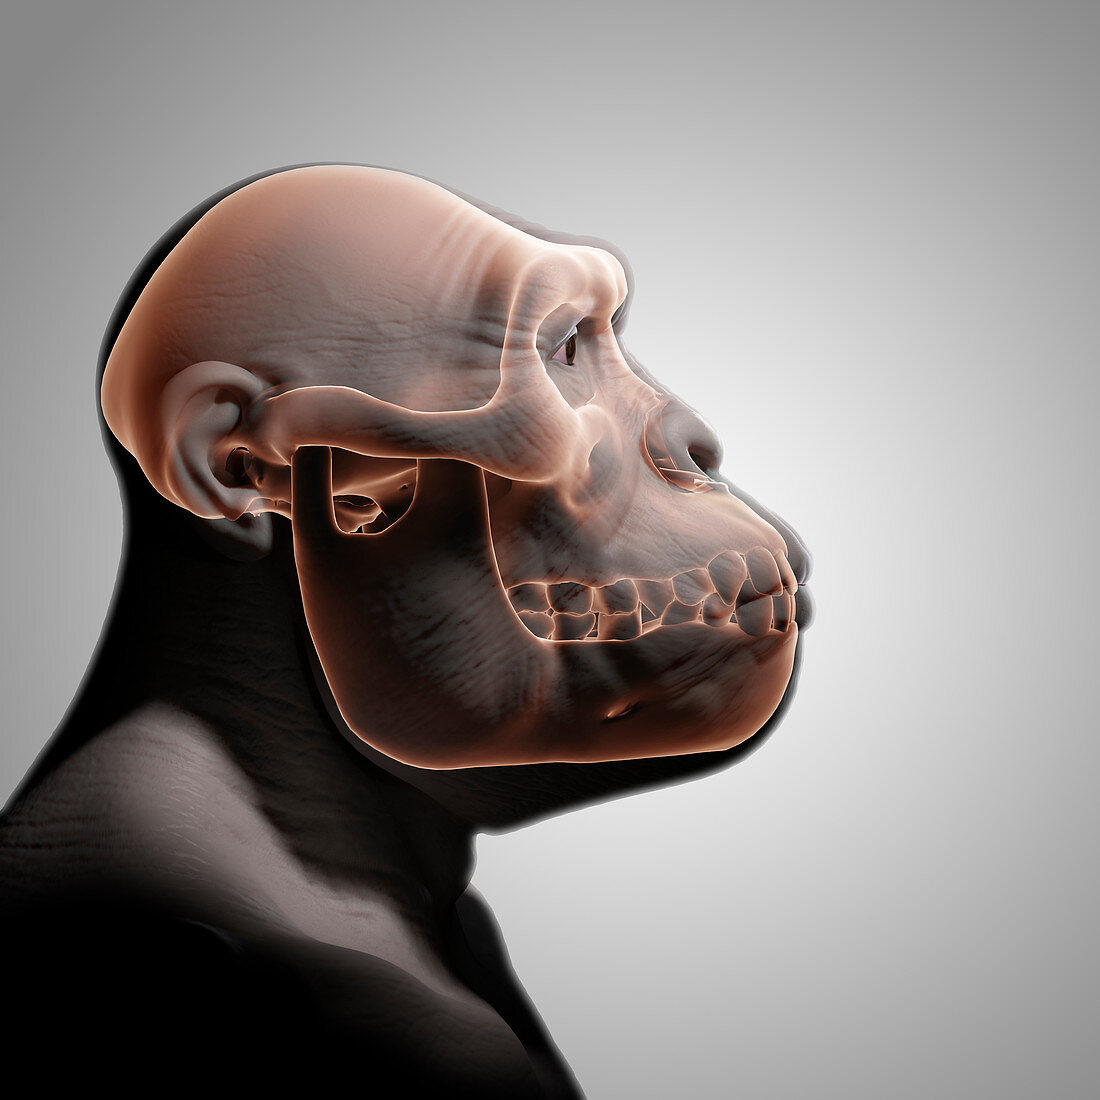 Australopithecus with Skull, illustration